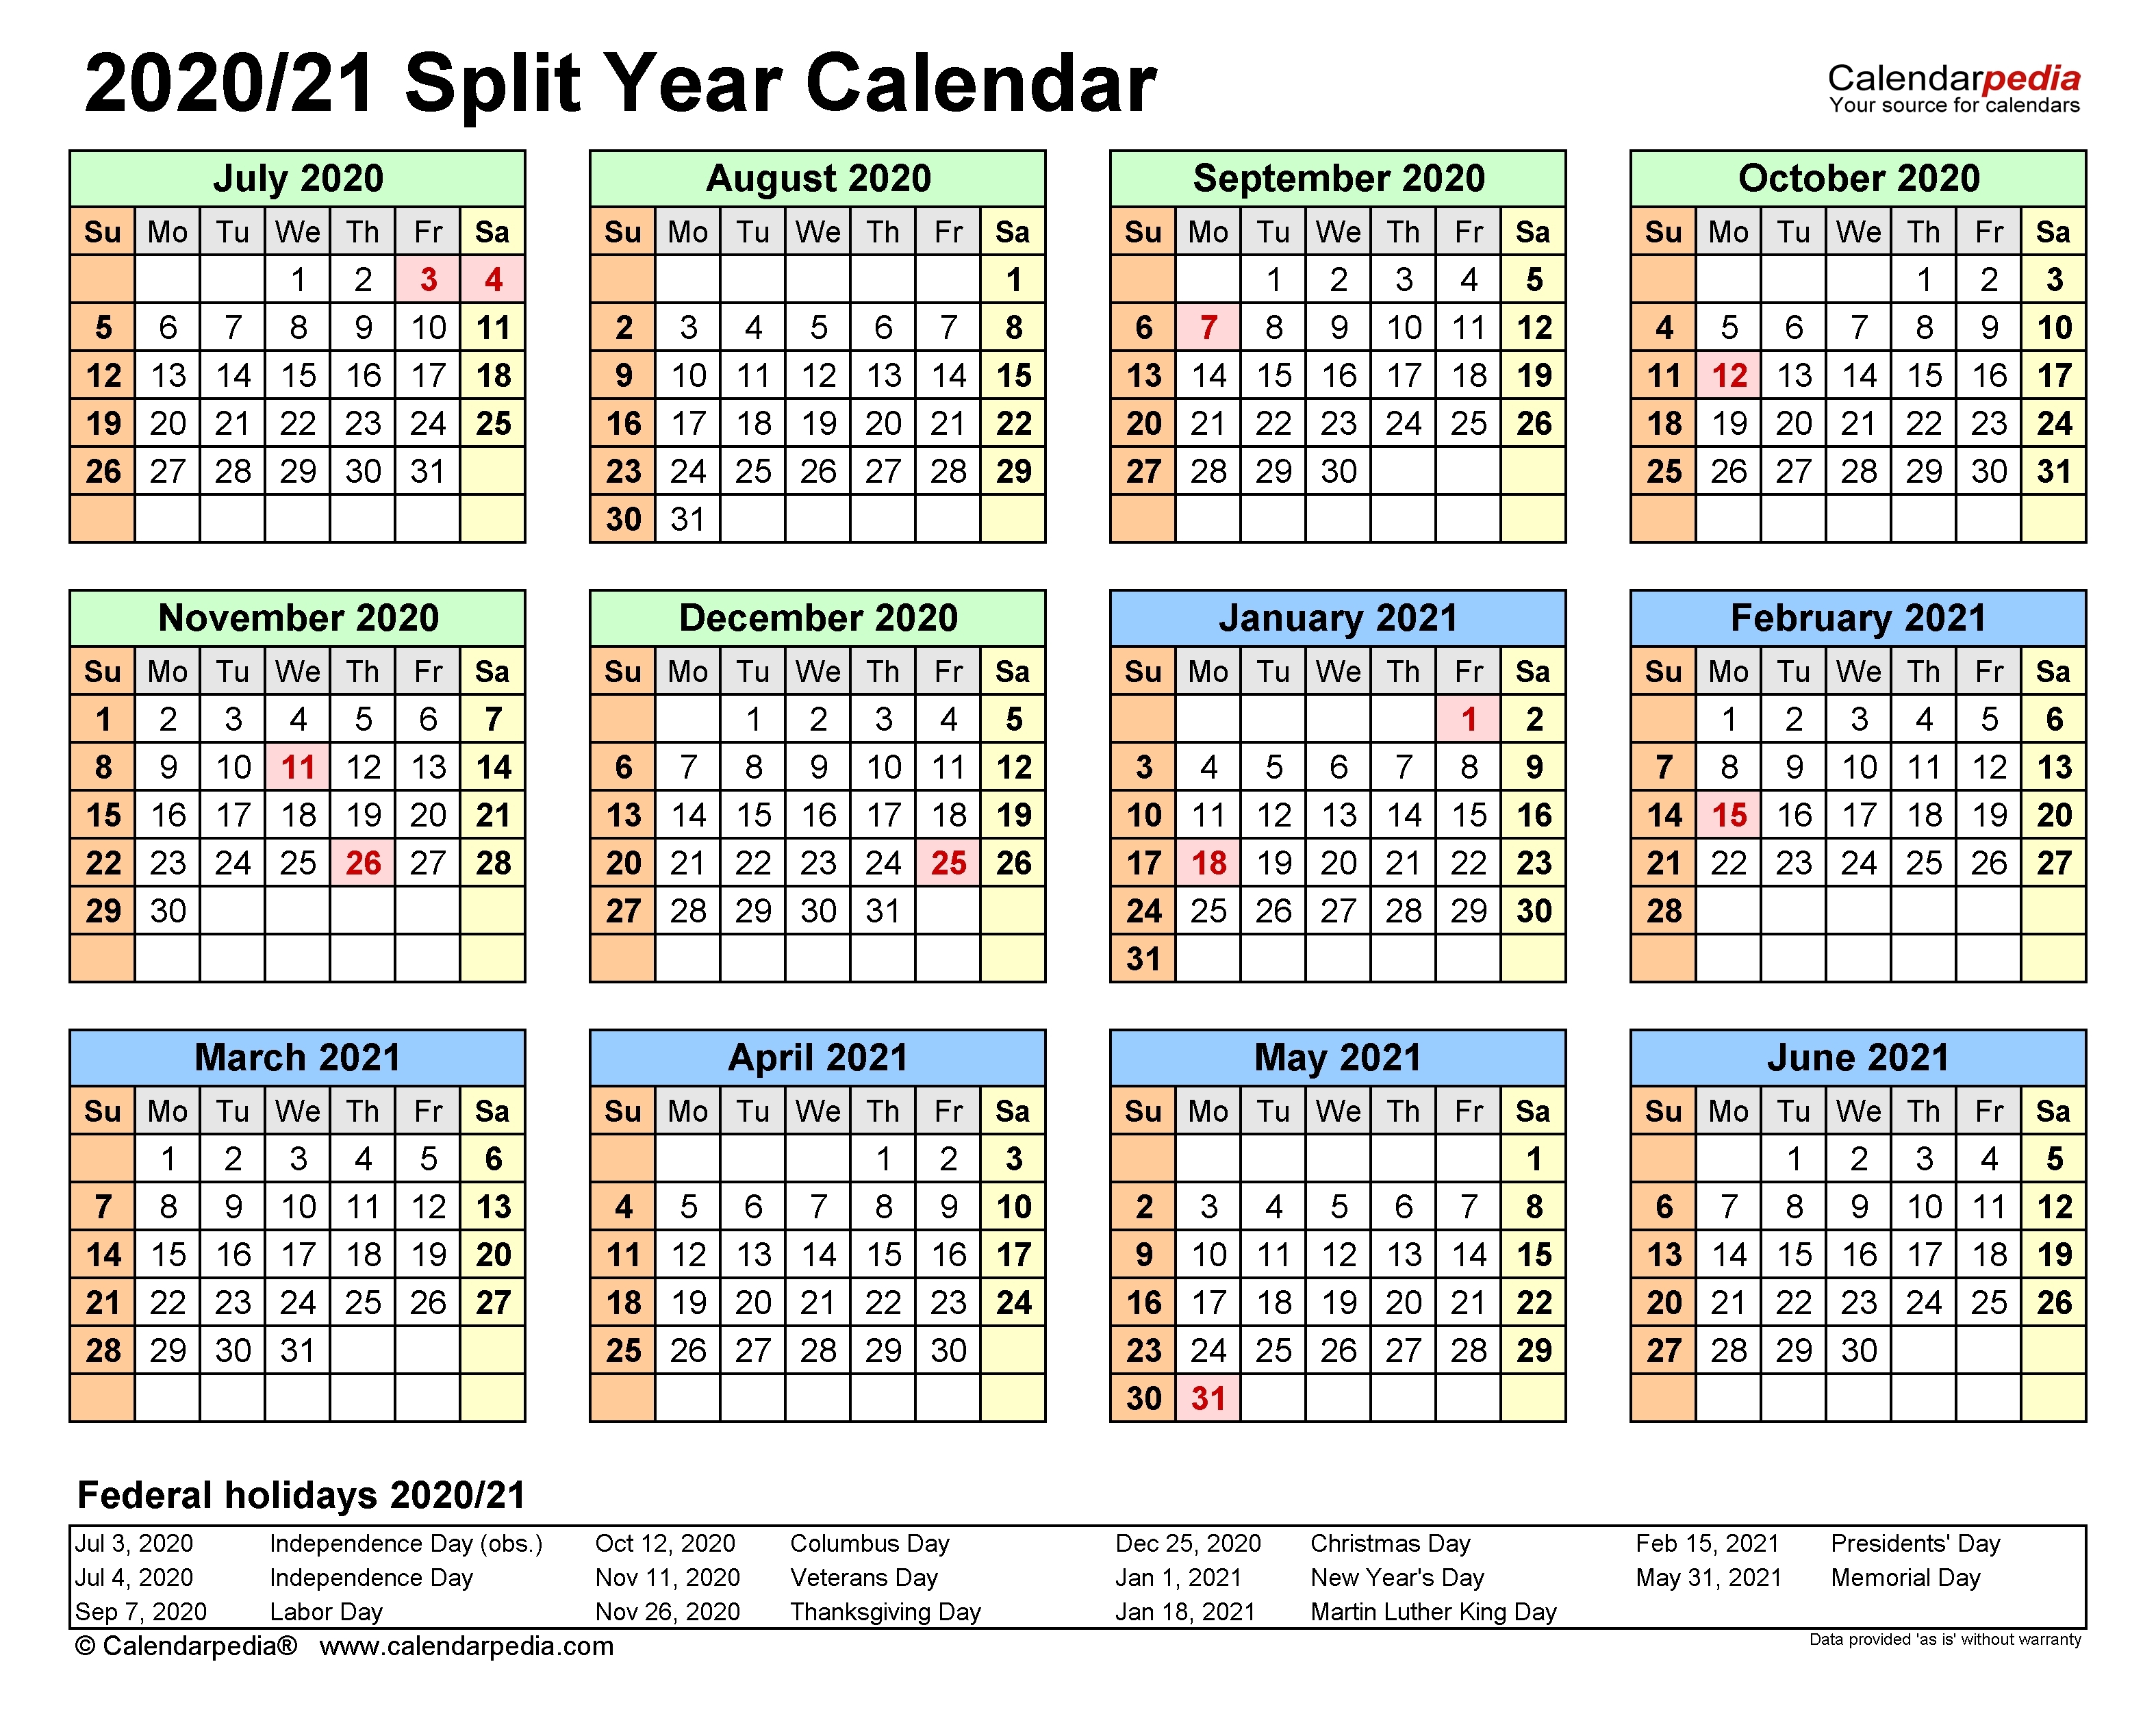 August 2020 Calendar - Template Calendar Design Show Me A Calendar Of August 2021